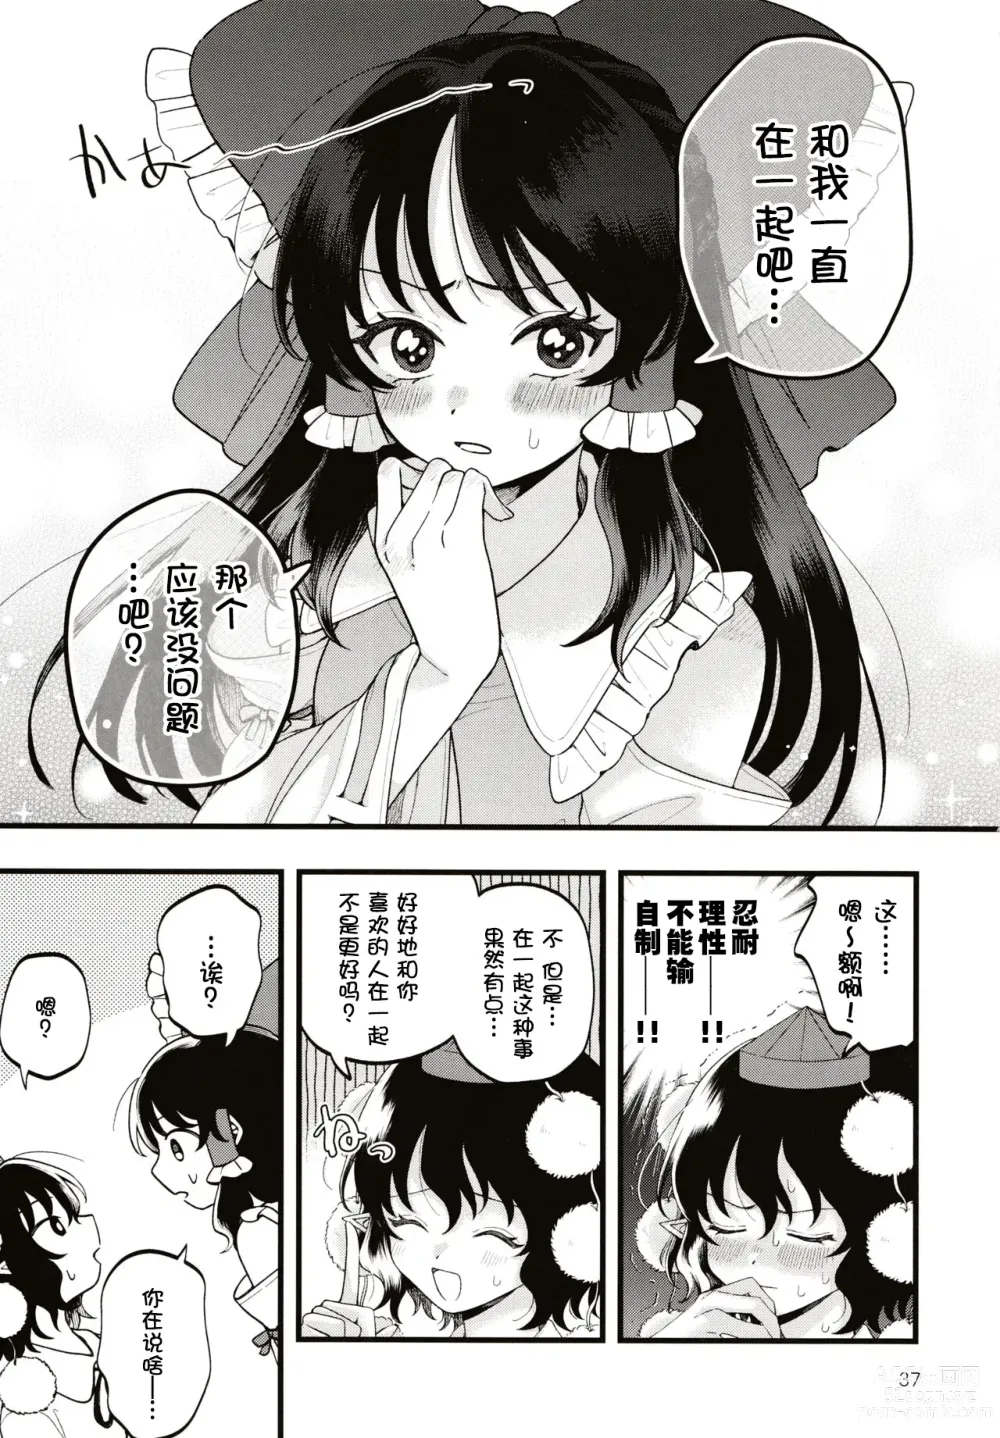 Page 36 of doujinshi Rubeus no Kankai